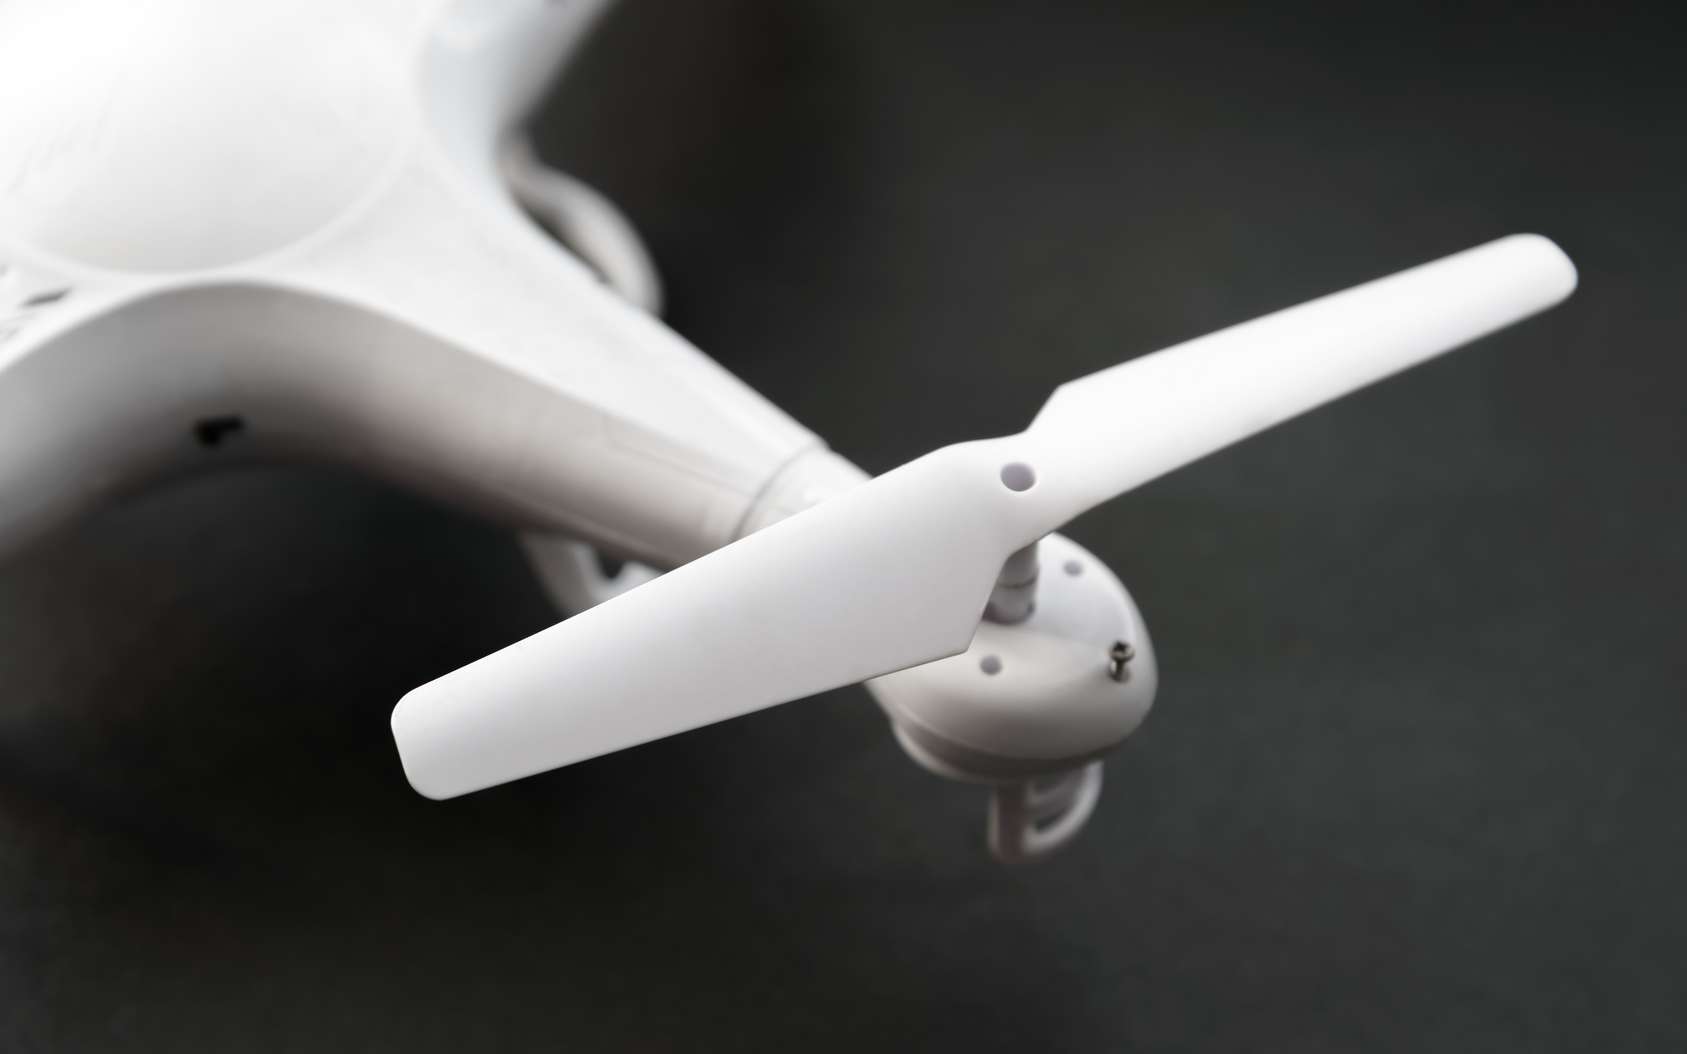 Le système de protection pour les hélices de drones coûte une dizaine d’euros à produire. © Eevl, Fotolia